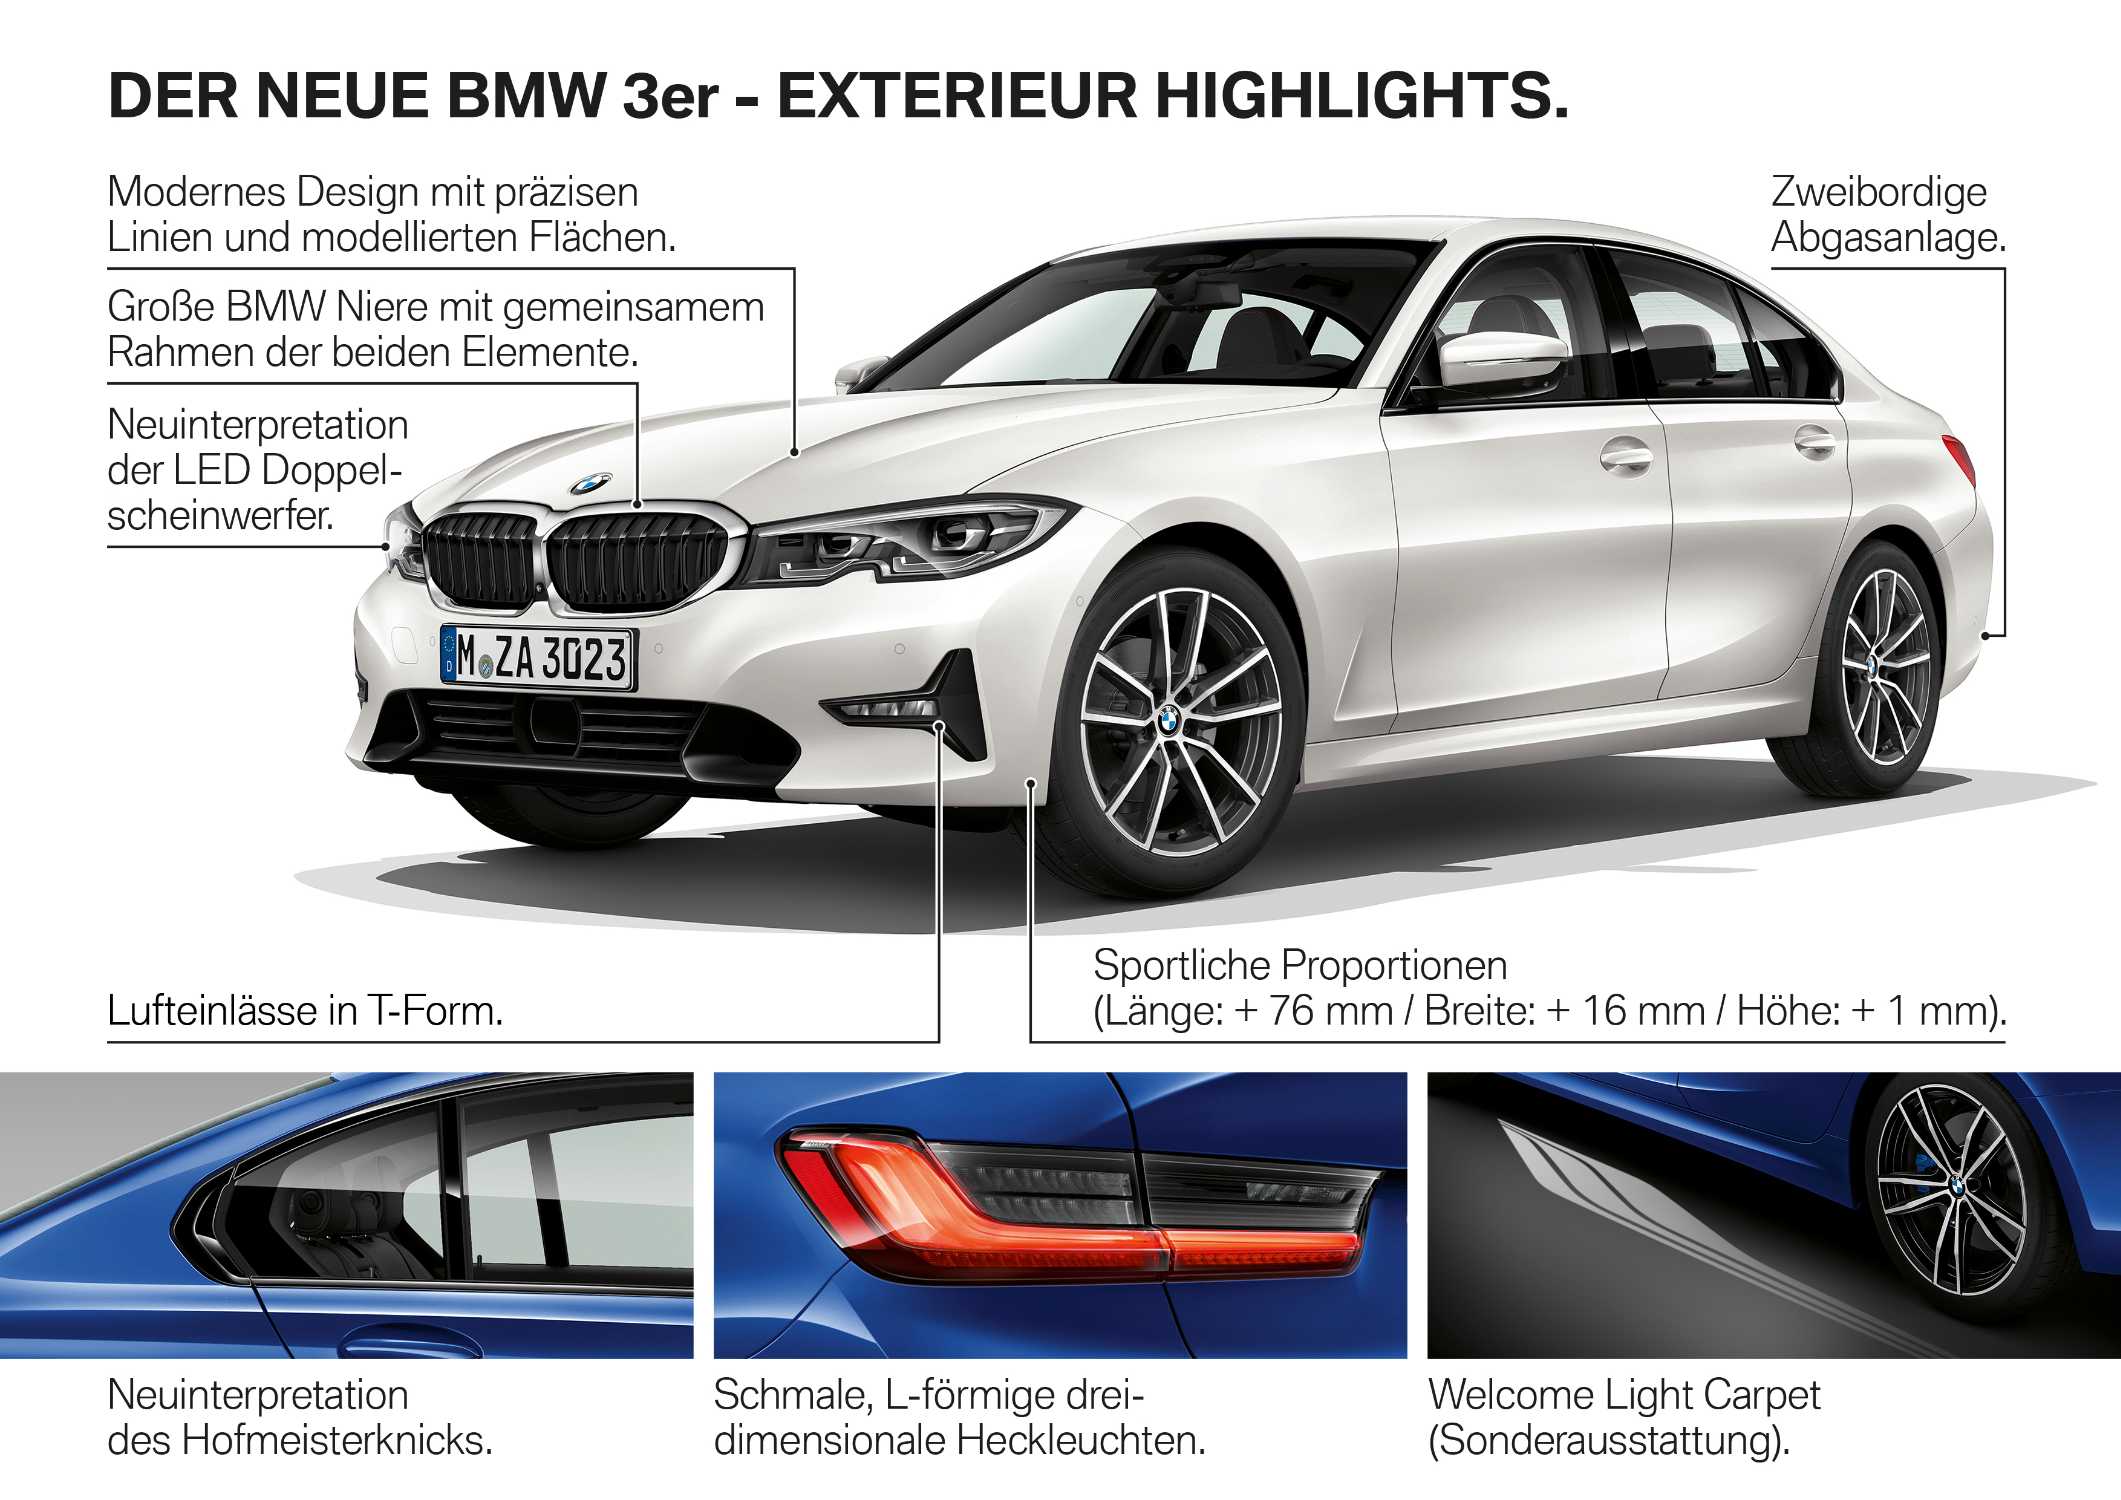 Die neue BMW 3er Limousine - Produkthighlights (10/2018).